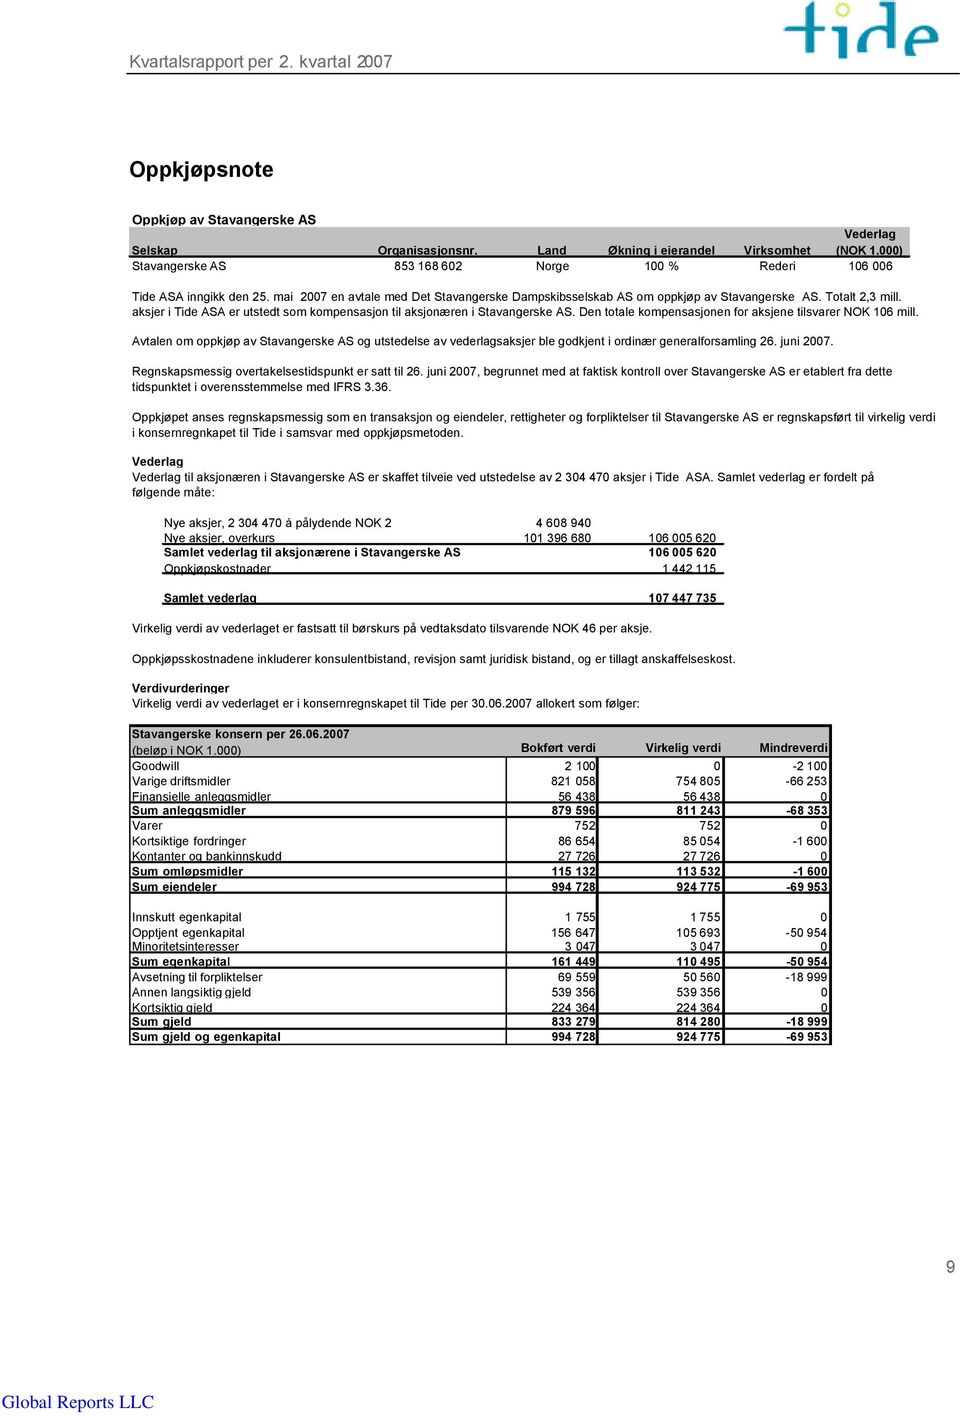 Den totale kompensasjonen for aksjene tilsvarer NOK 106 mill. Avtalen om oppkjøp av Stavangerske AS og utstedelse av vederlagsaksjer ble godkjent i ordinær generalforsamling 26. juni 2007.